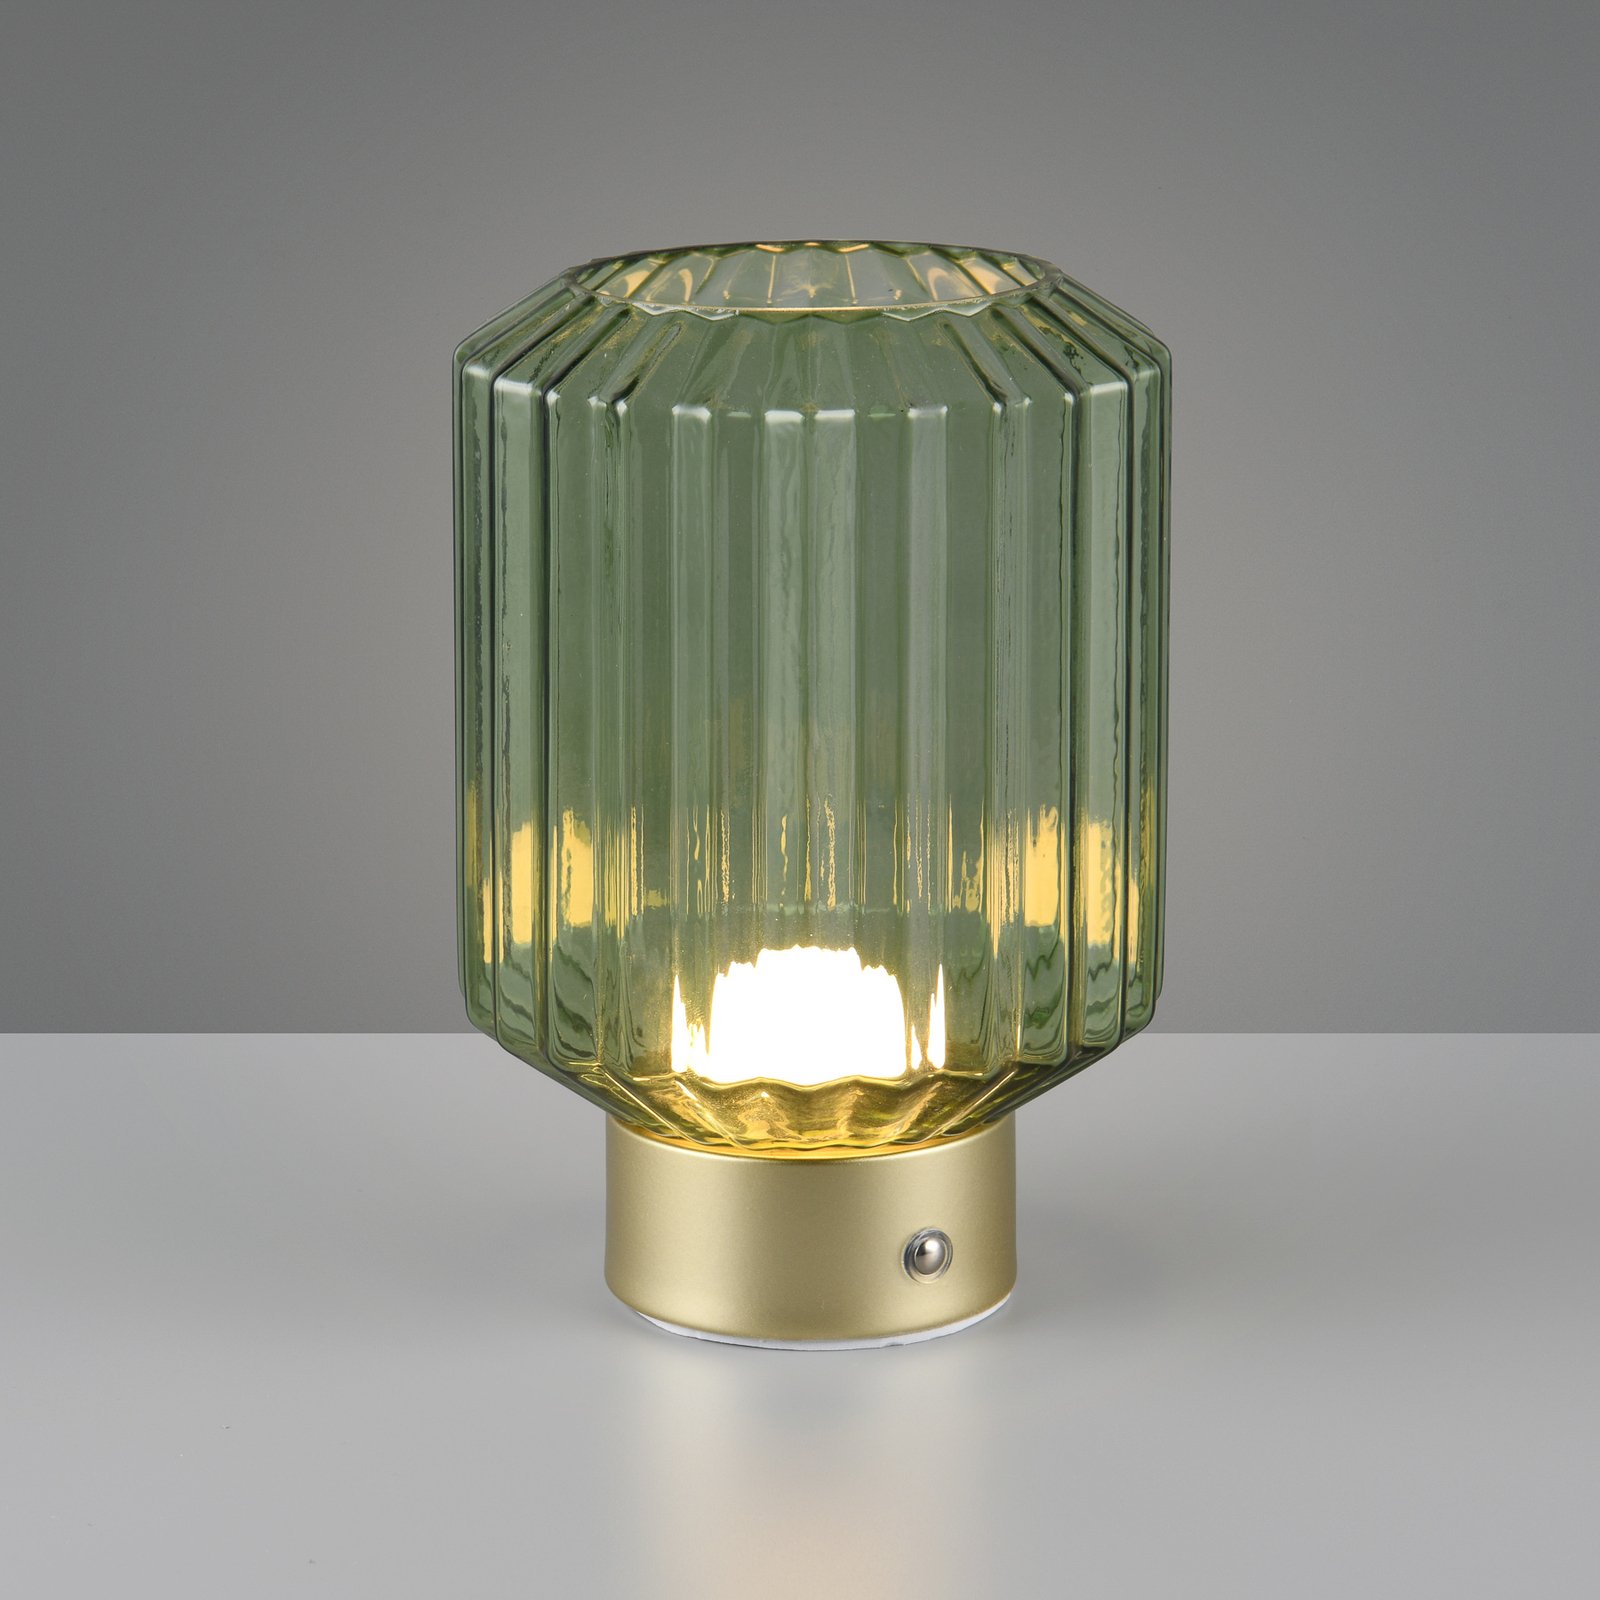 Lord LED oppladbar bordlampe, messing/grønn, høyde 19,5 cm, glass